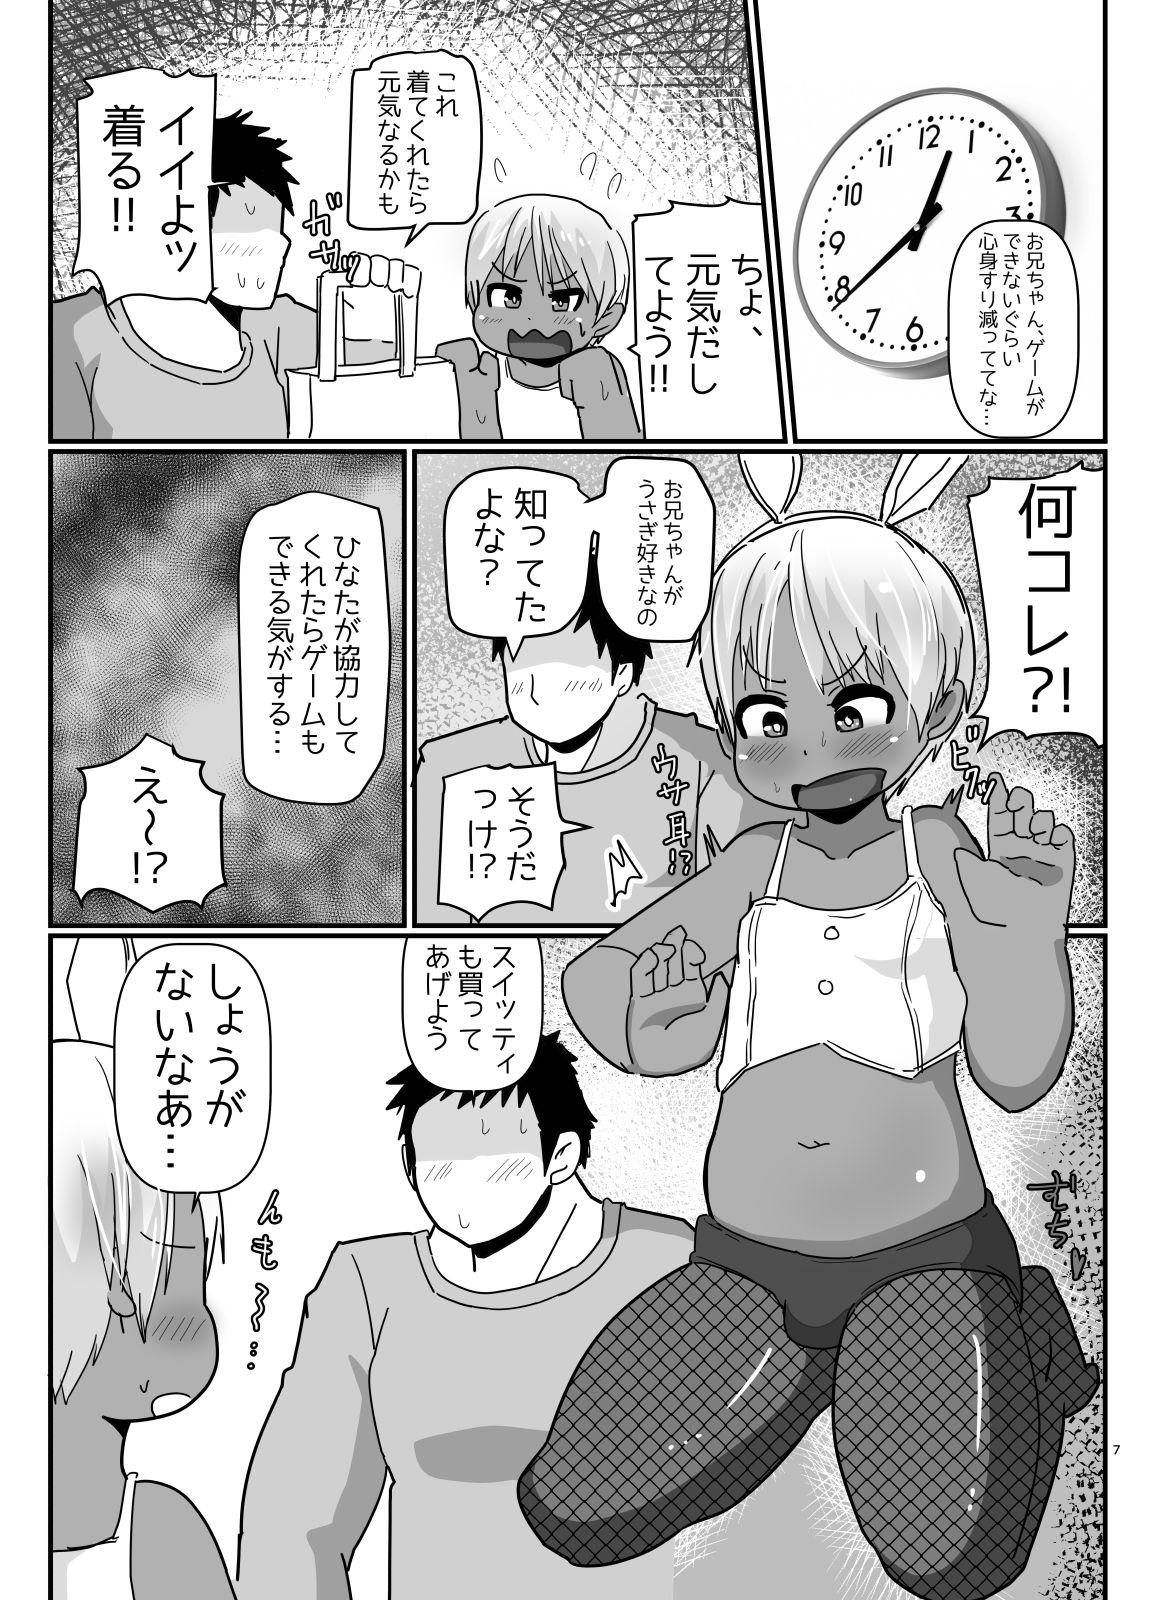 Bunny Cos no Kasshokukko♂ ga Genkidzukete Kureru Manga 5